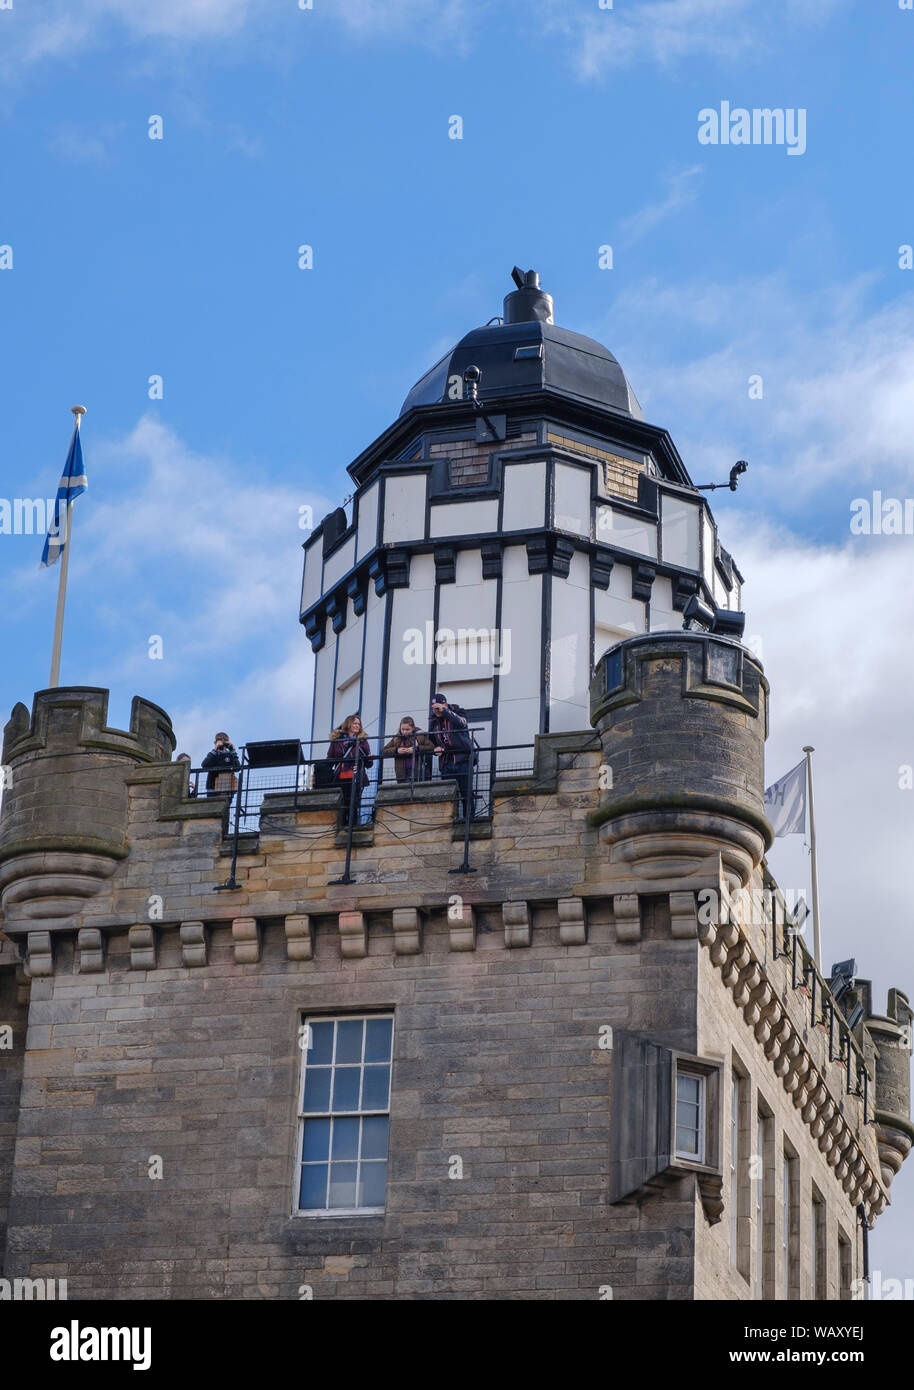 Los turistas en la parte superior de la cámara obscura tower una famosa atracción turística en la colina del castillo, la sección de Royal Mile, Old Town, Edinburgh Foto de stock